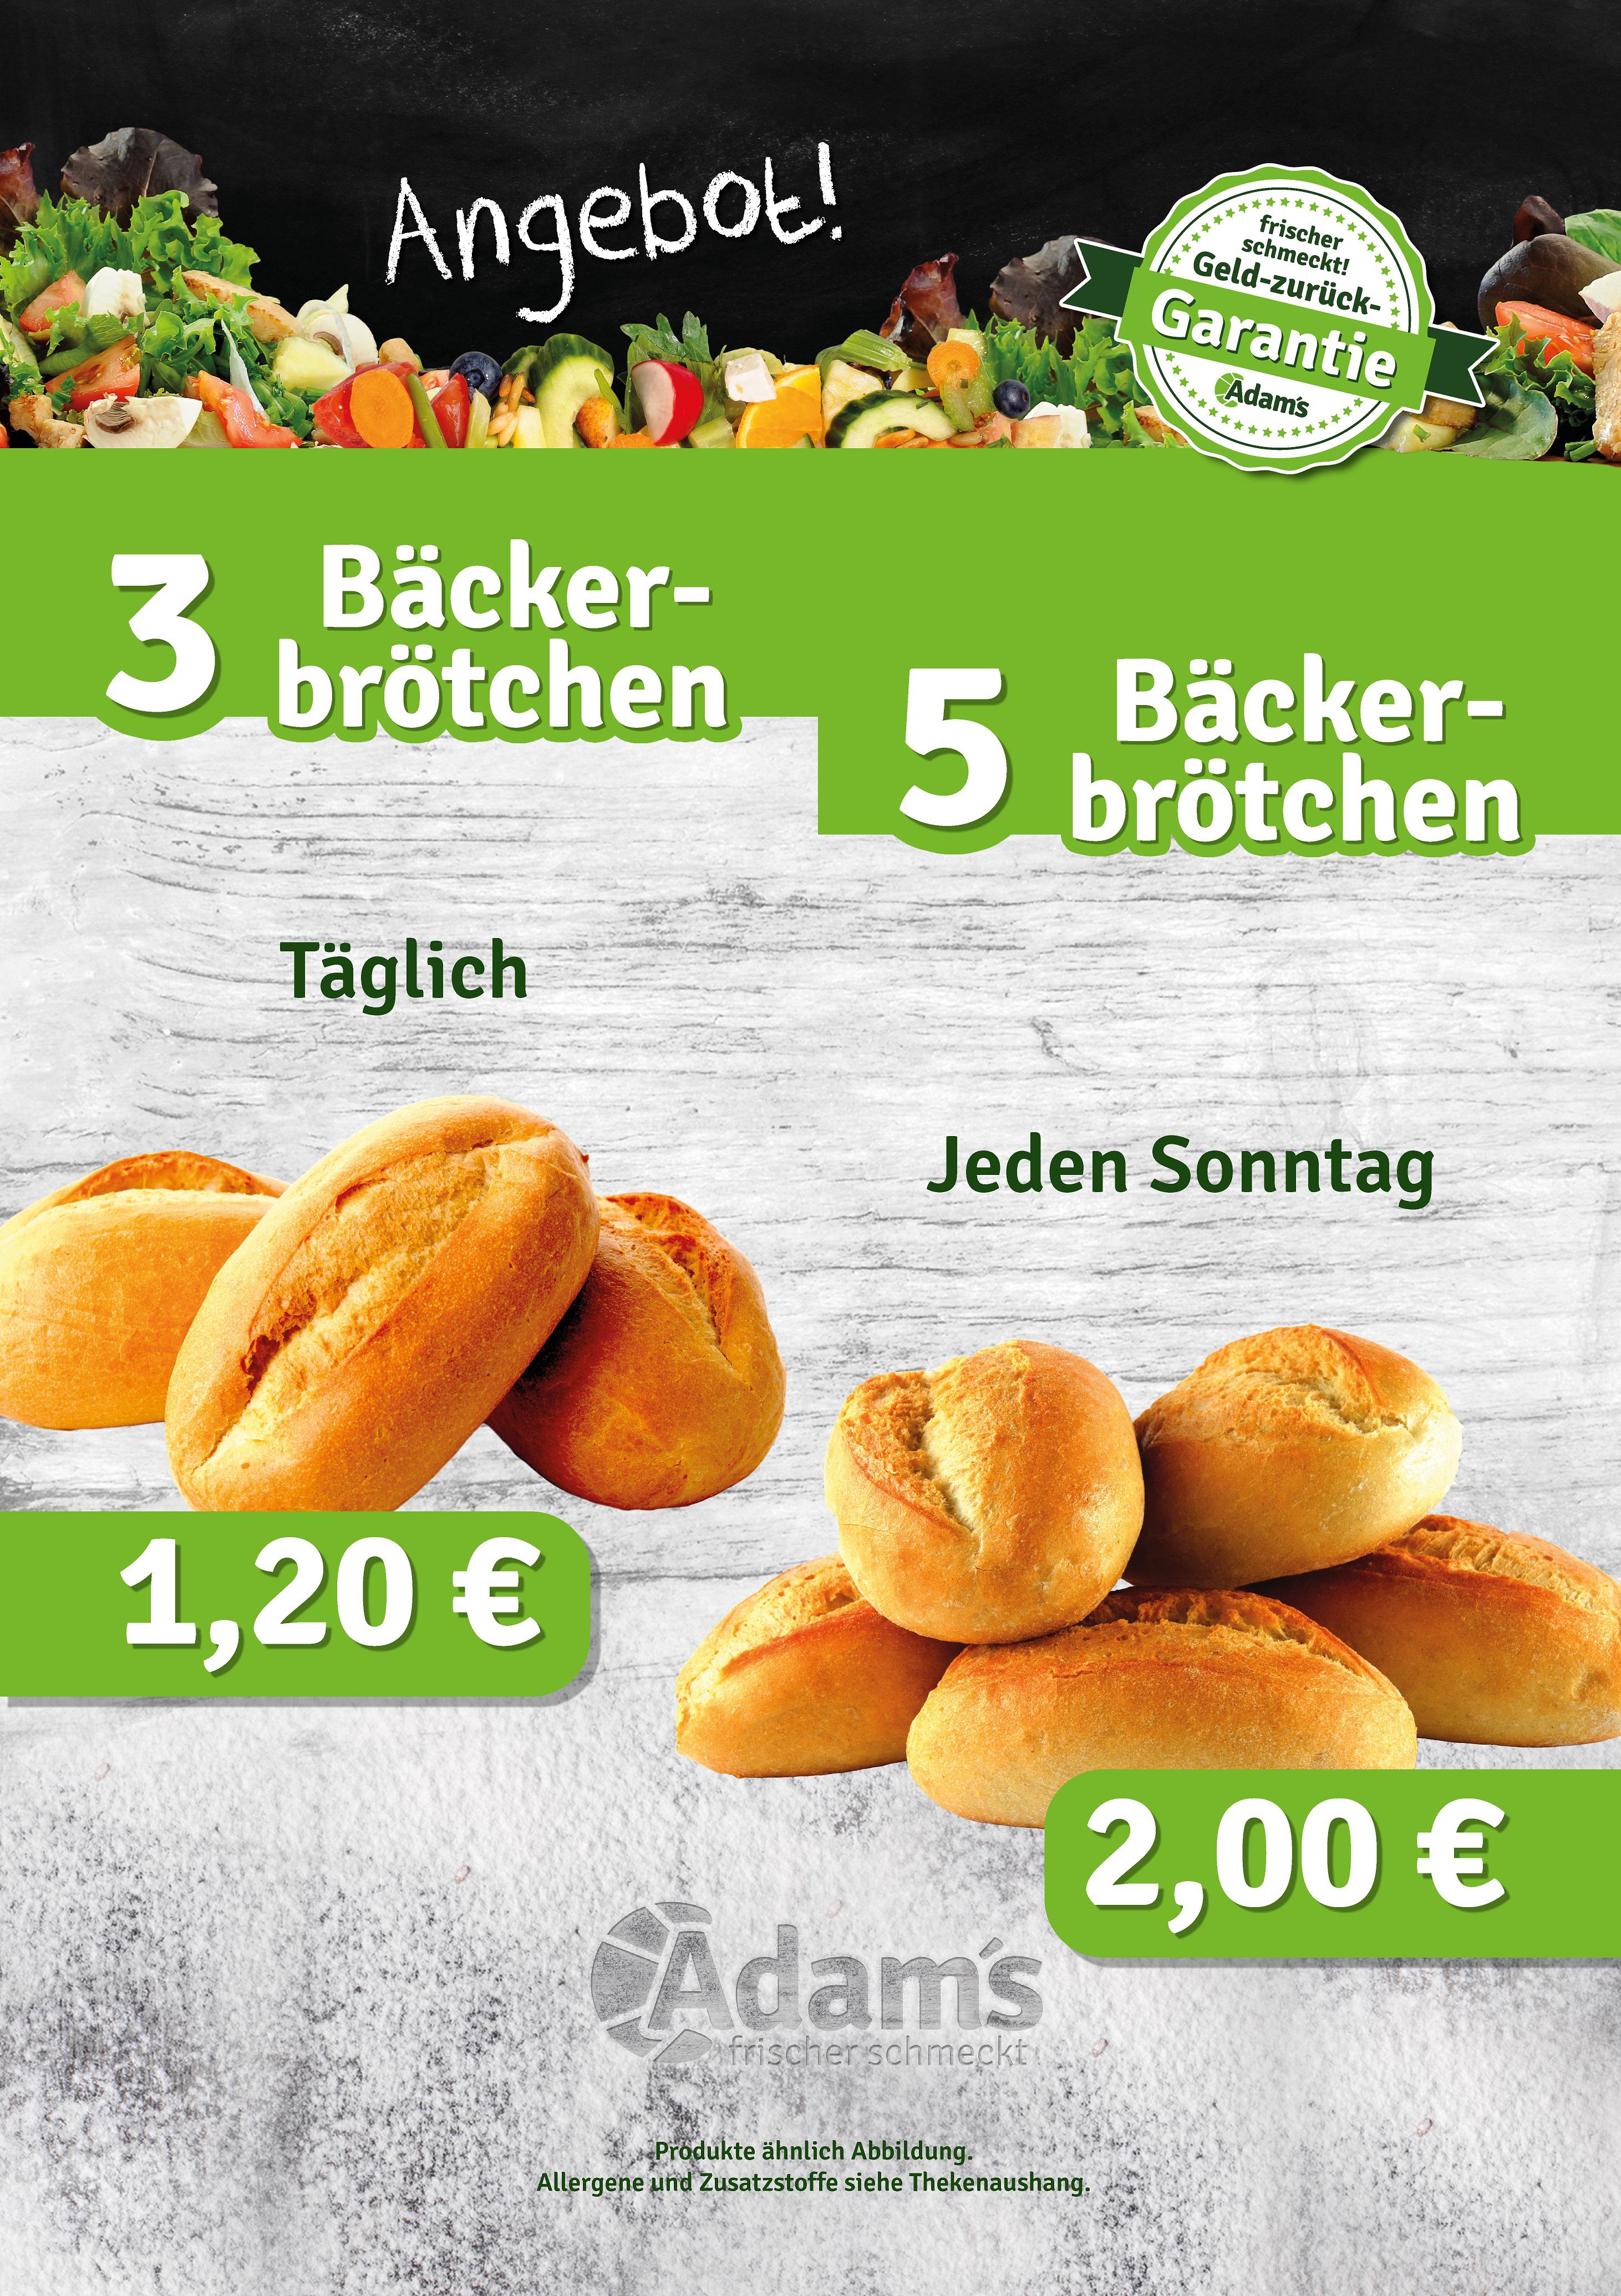 Täglich - 3 Bäckerbrötchen für 1,20 € und jeden Sonntag 5 Bäckerbrötchen für 2,00 €